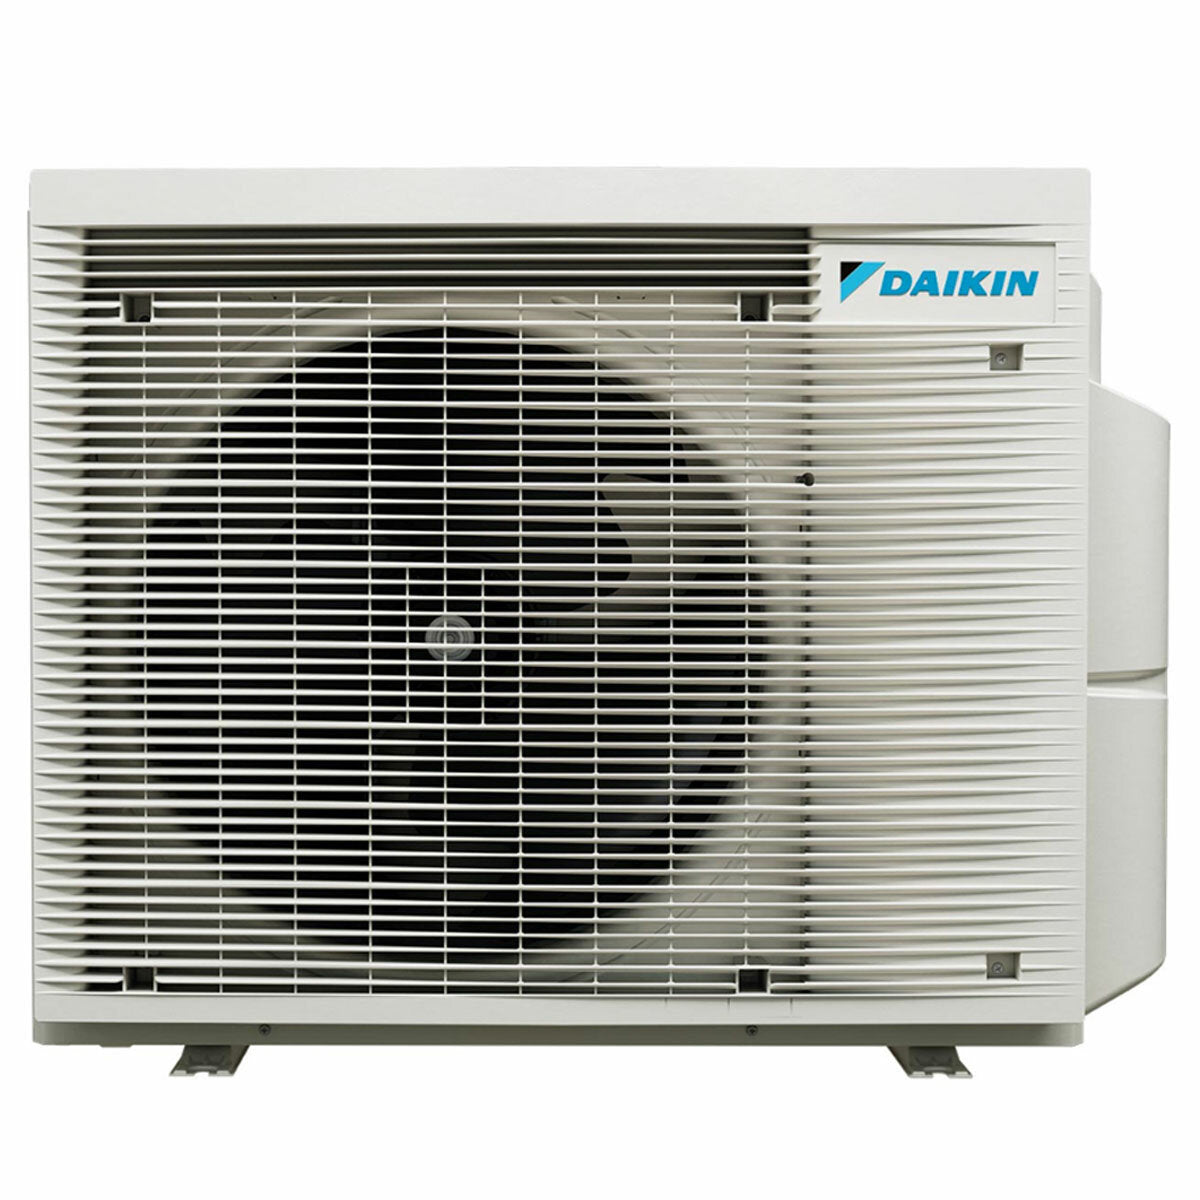 Daikin Stylish White Quadri-Split-Klimaanlage 7000+7000+9000+18000 BTU Inverter A++ WLAN-Außeneinheit 7,4 kW